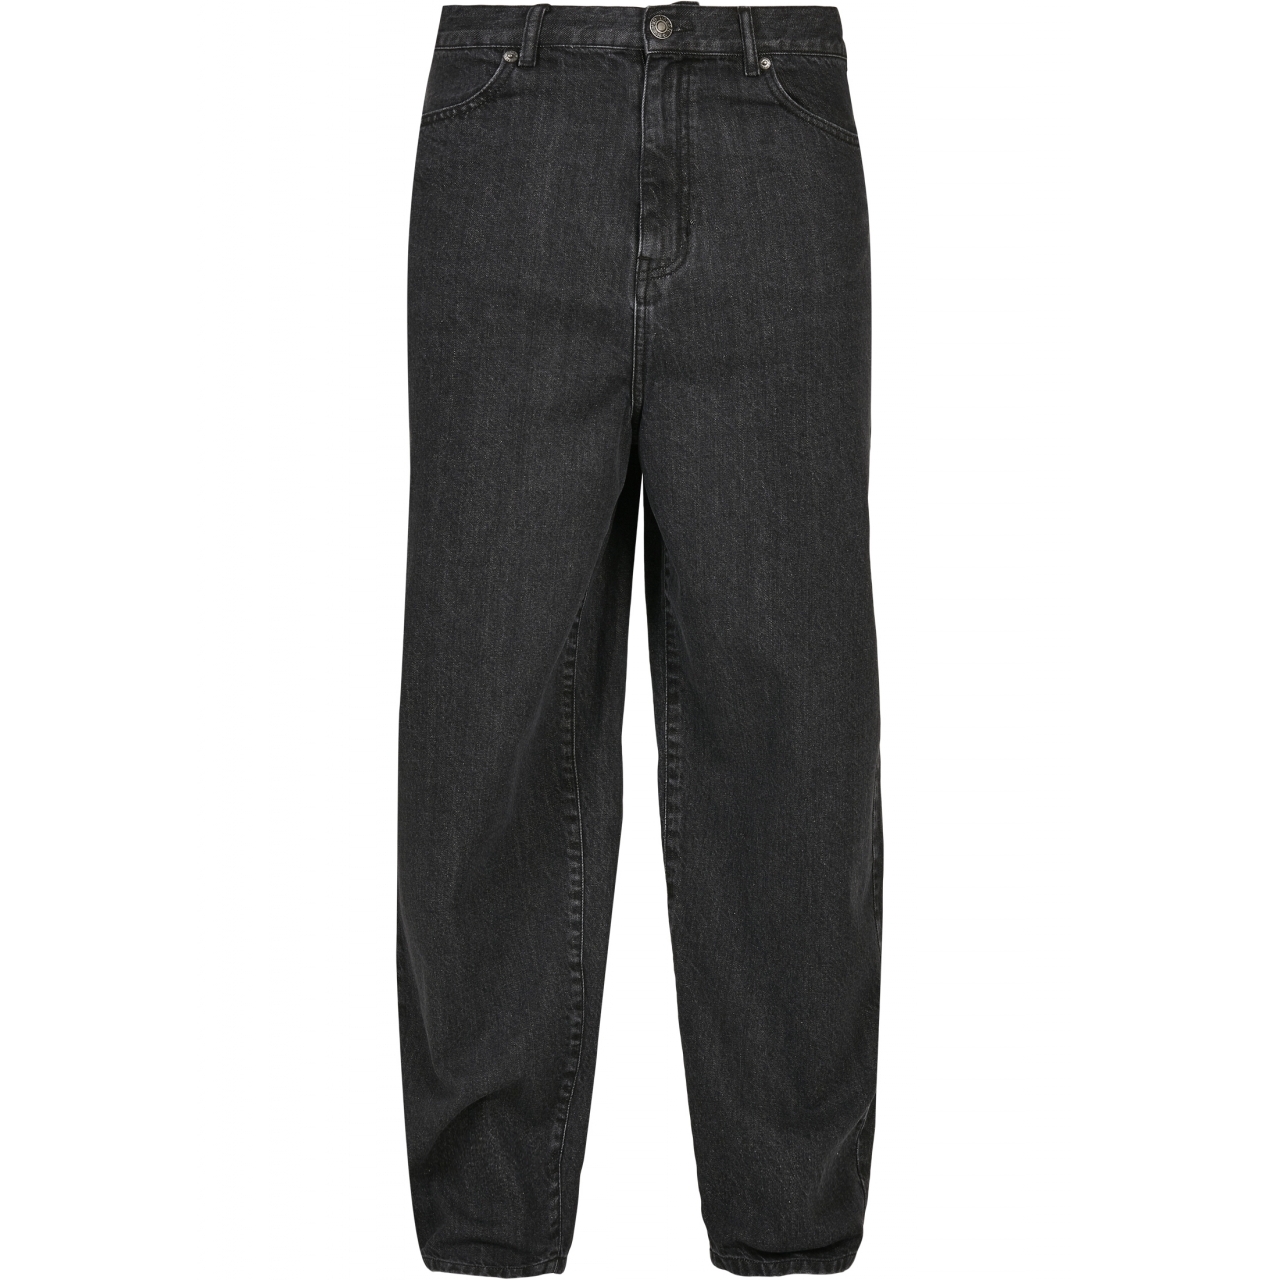 Džíny Urban Classics 90s Jeans - černé, 36